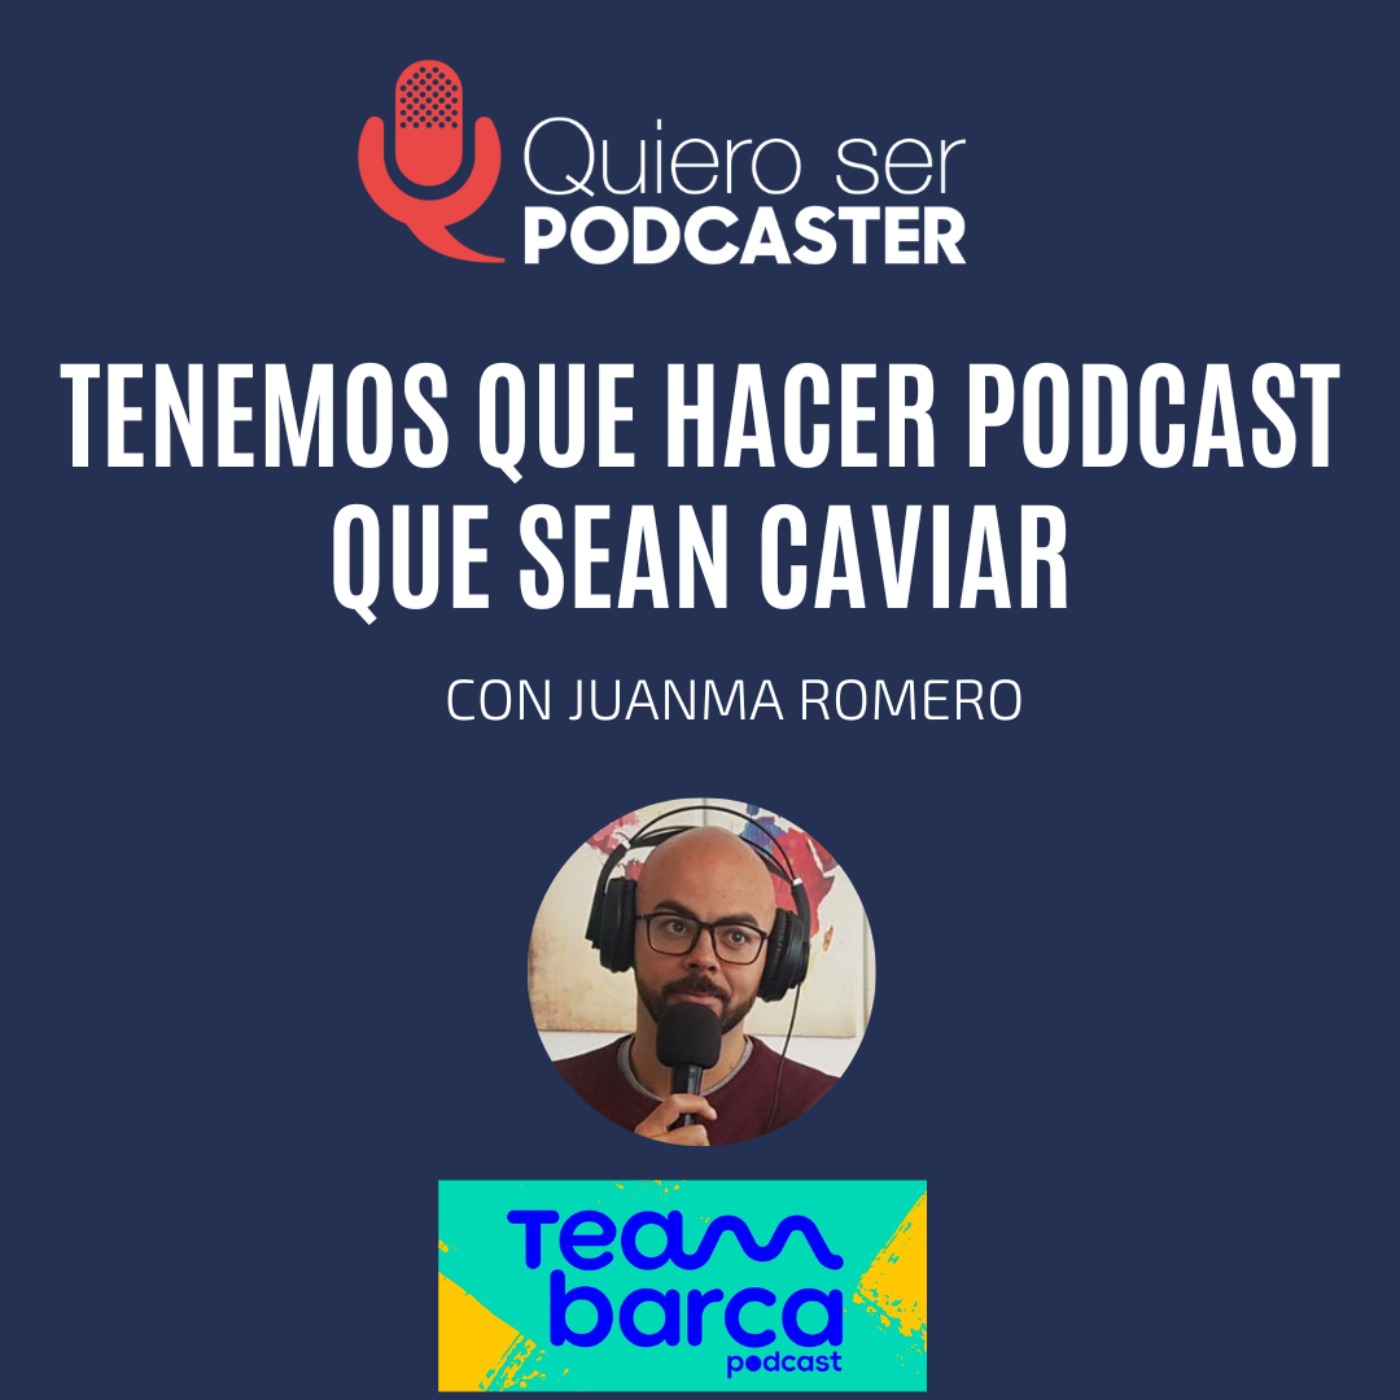 Tenemos que hacer podcast que sean caviar, con Juanma Romero @Guardiolato de @TeamBarcaPod